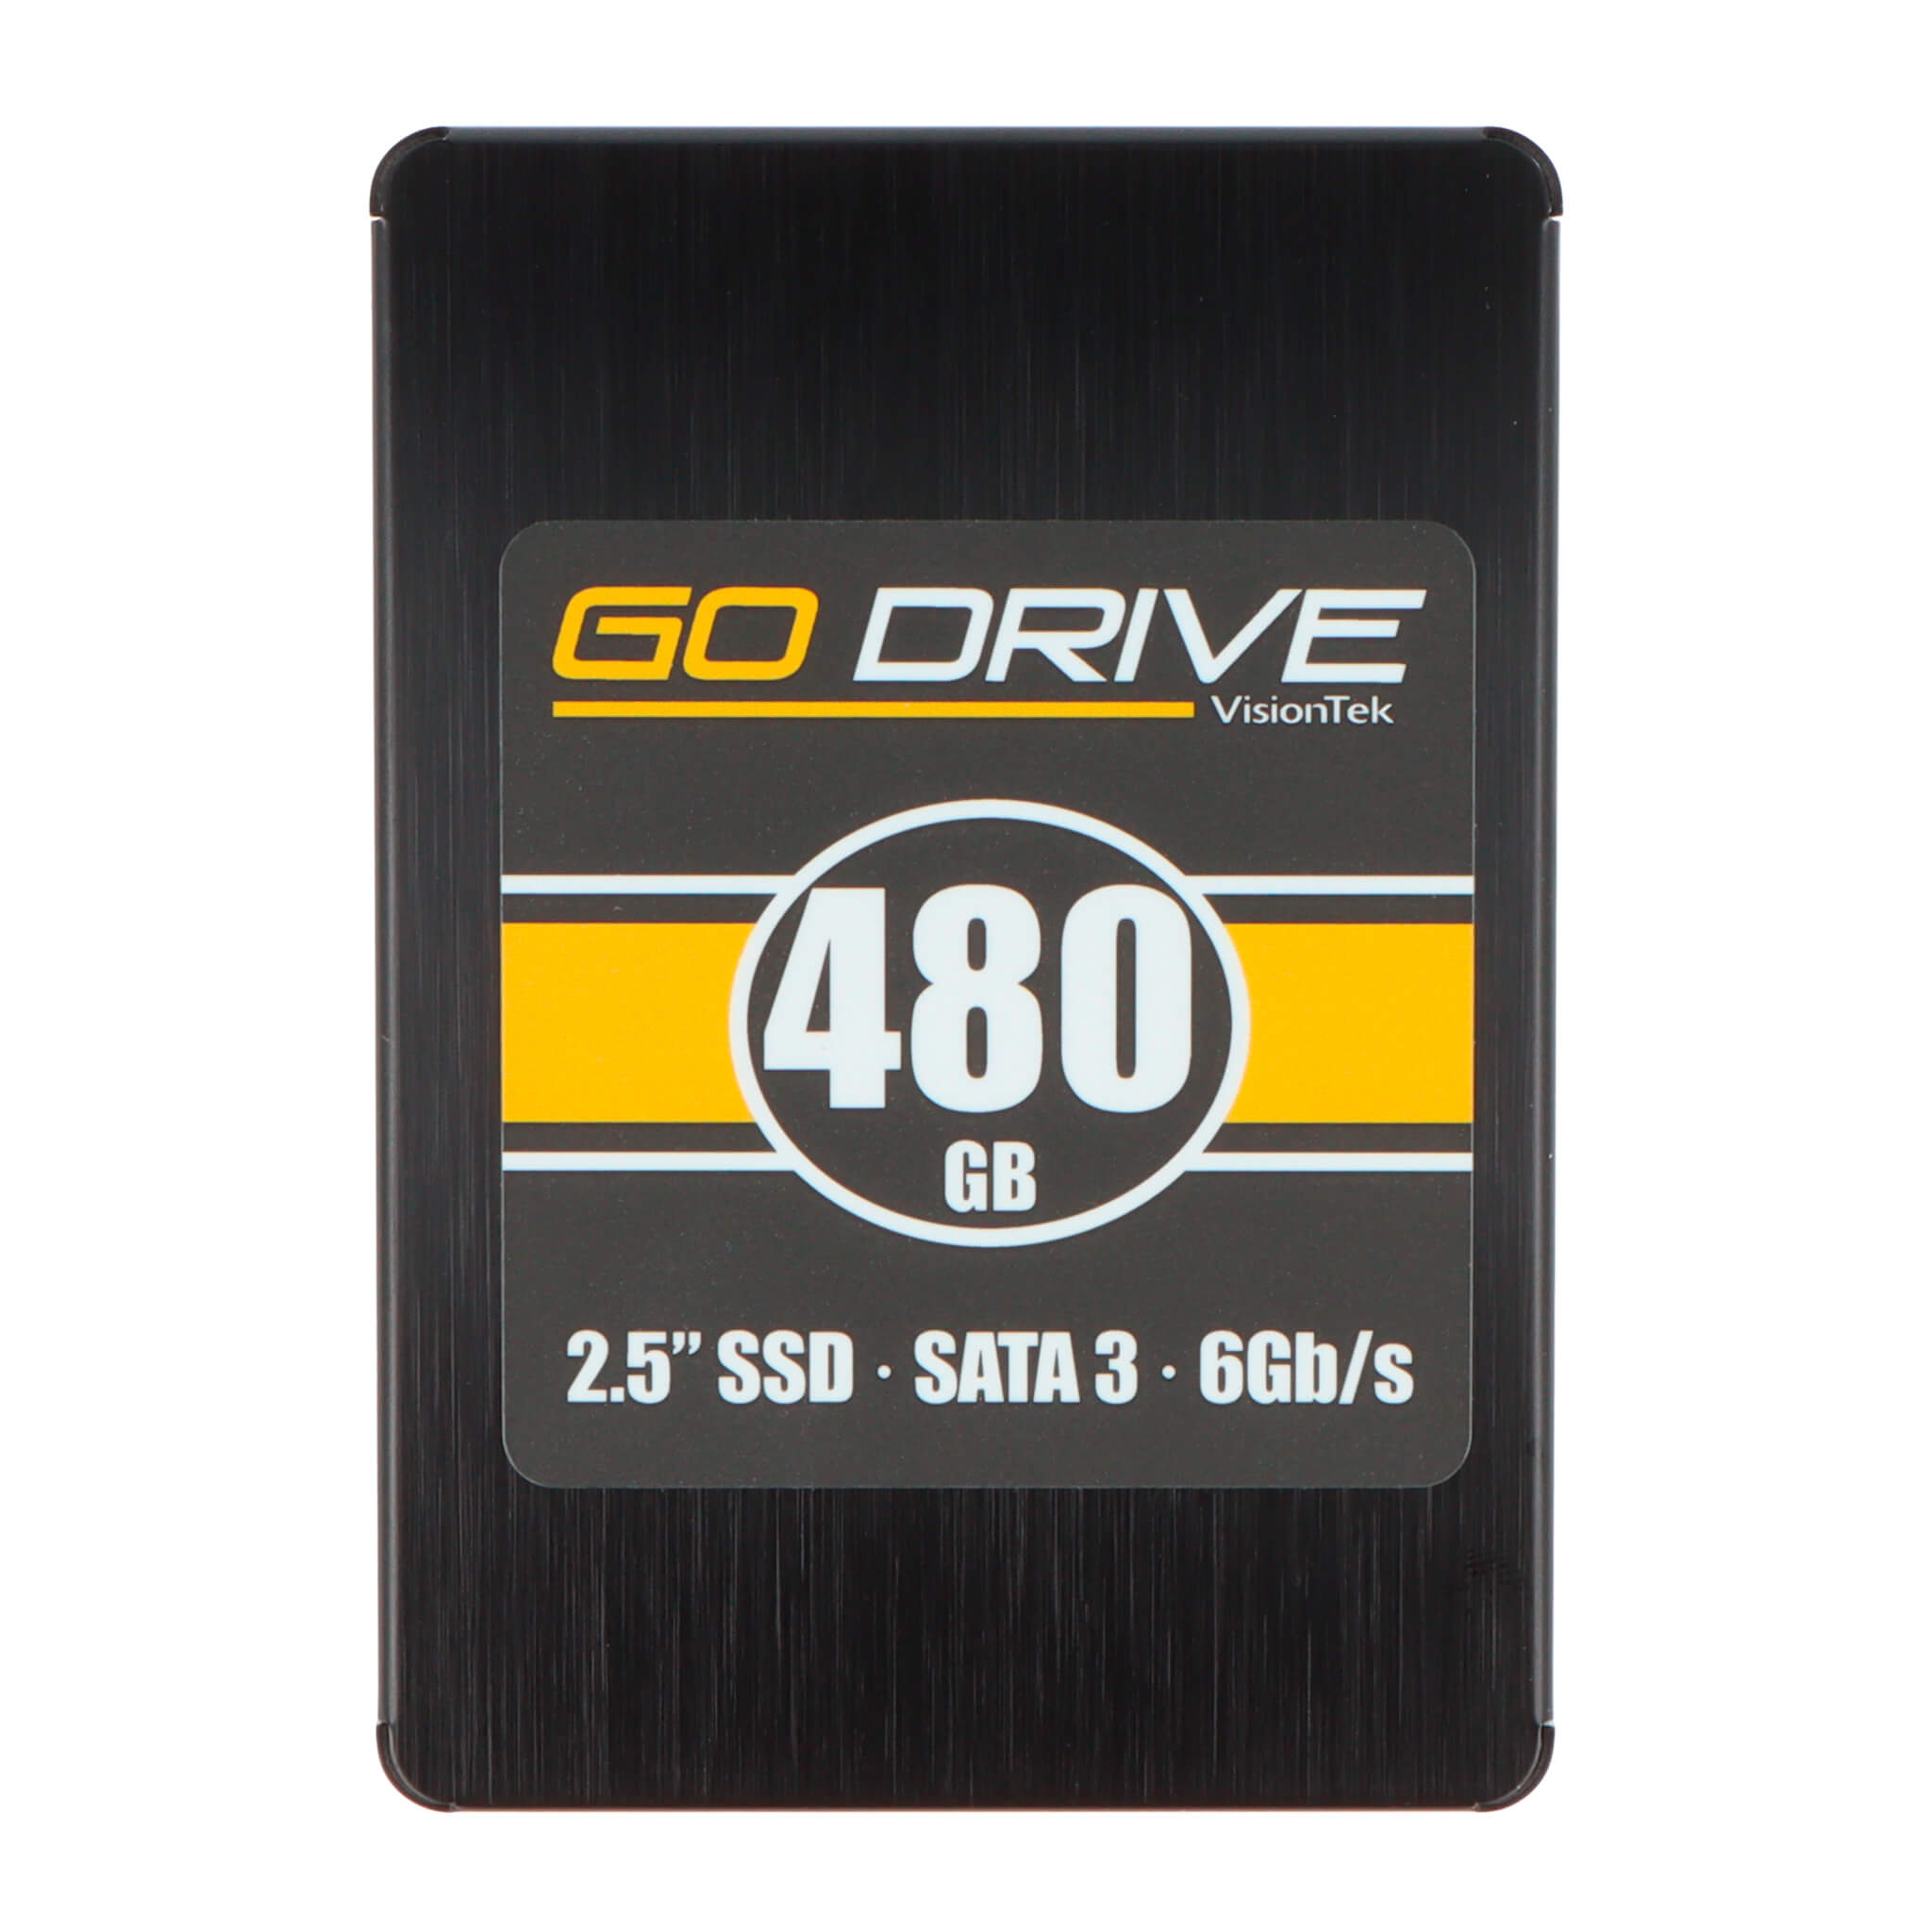 VisionTek Go Drive 2.5" SSD – VisionTek.com